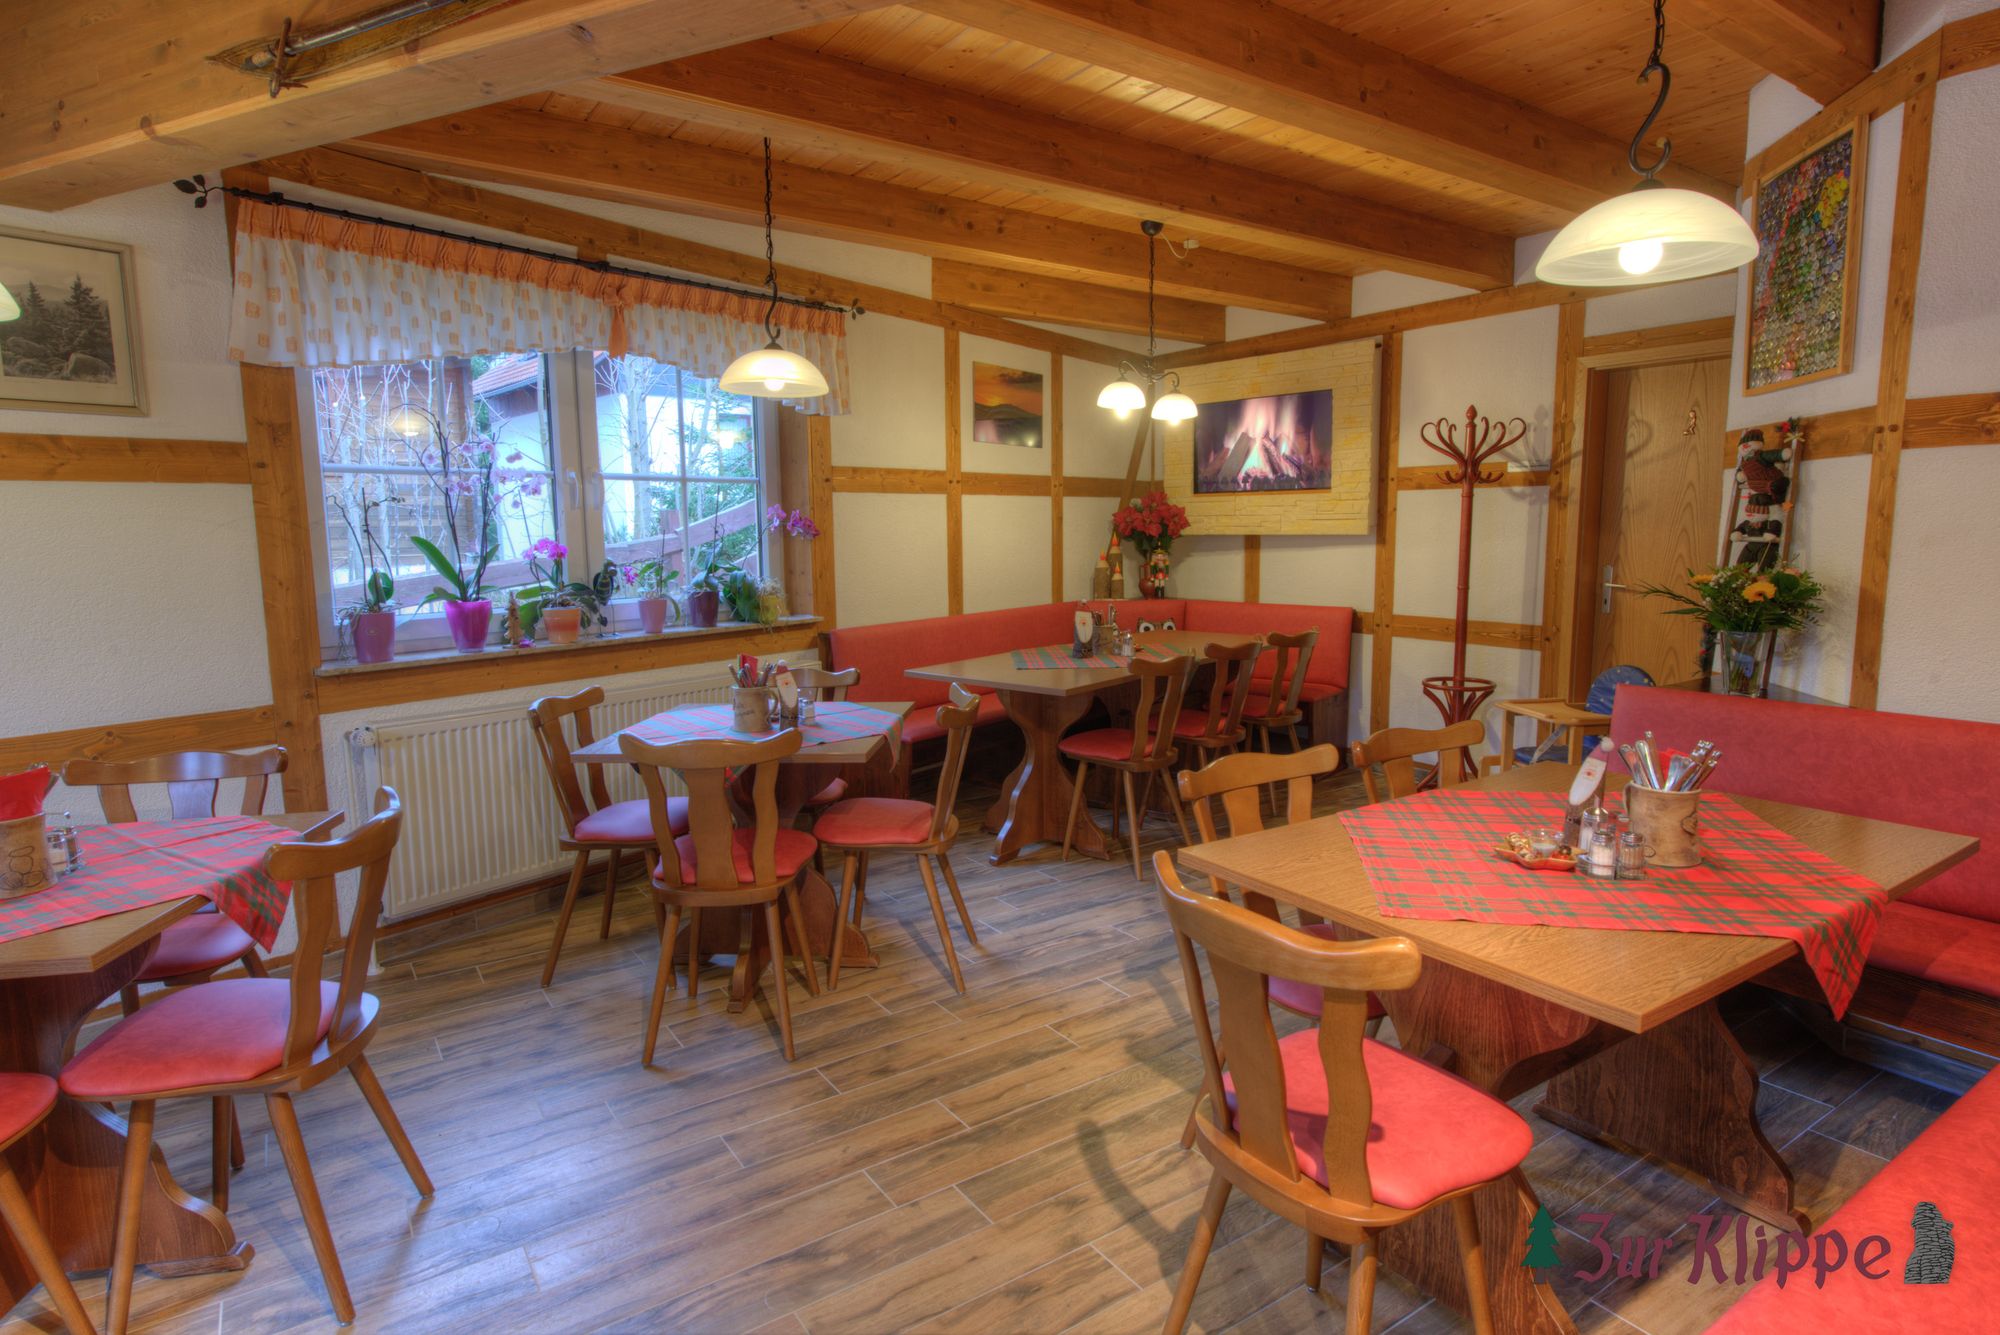 In unserem gepflegten Harzer Gasthaus -Zur Klippe- freuen wir uns auf Ihren Besuch! (Bild: Fam. Michael)